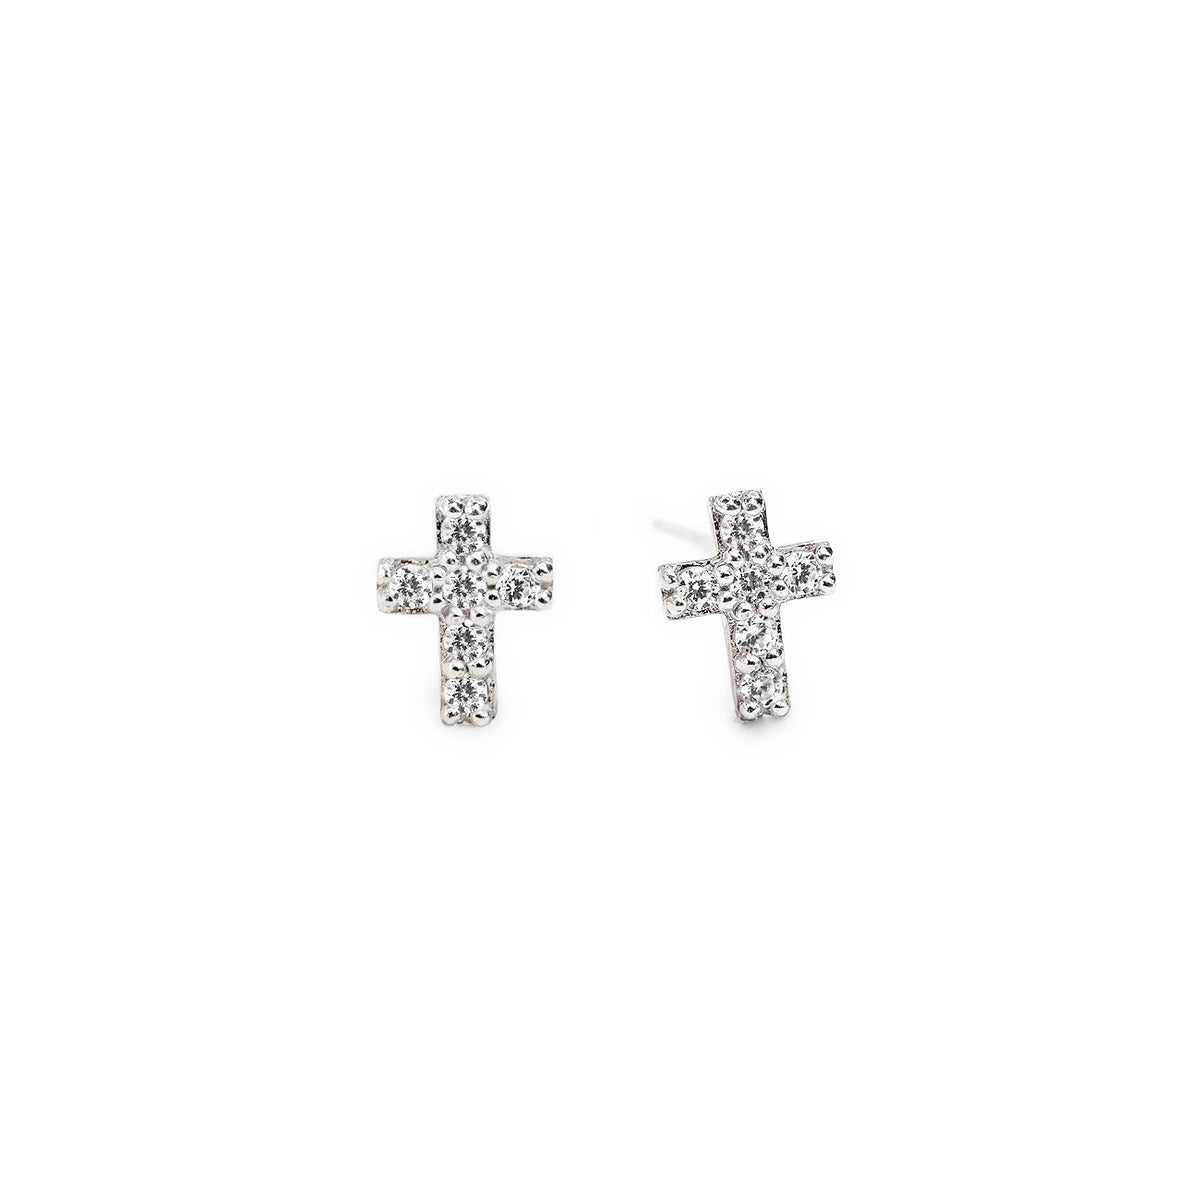 Cross Earrings, Stud Earrings, Sterling Silver Earrings – AMYO Jewelry